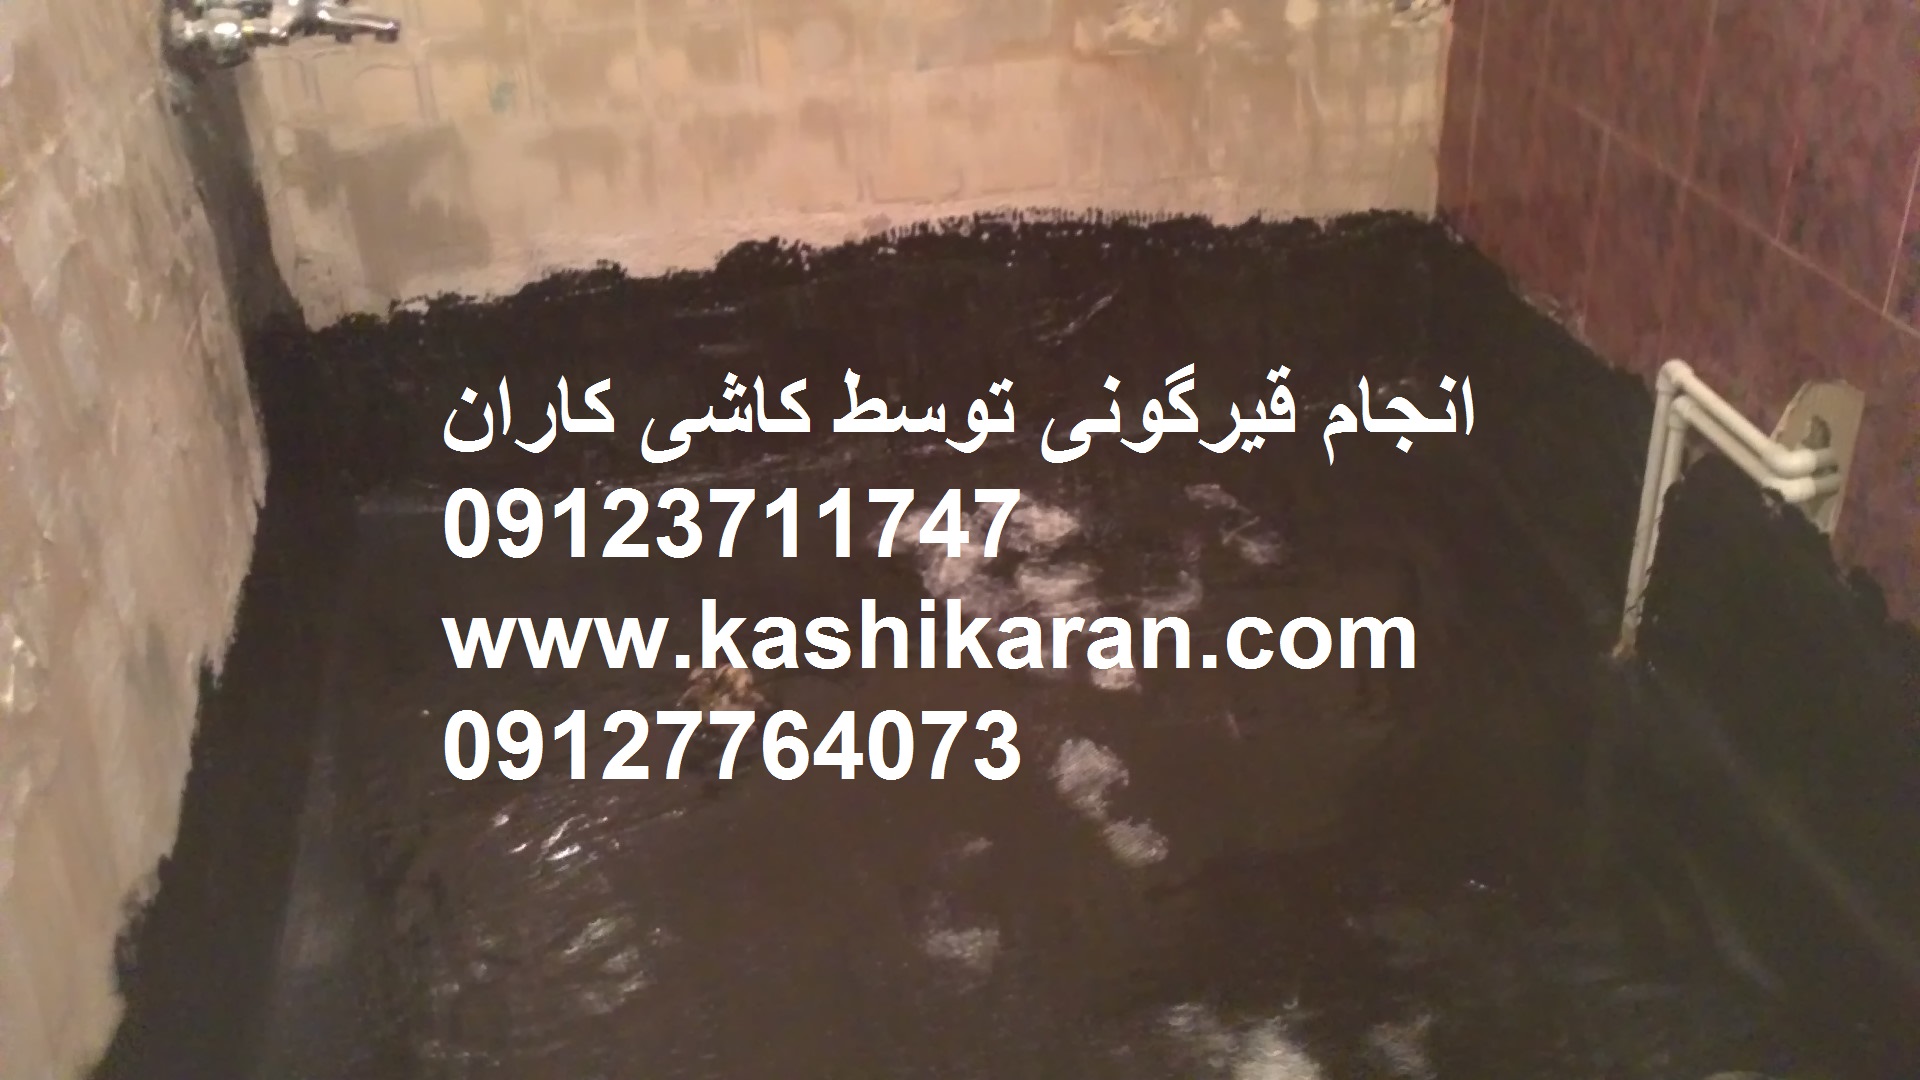 رفع نم سرویس های بهداشتی وتبدیل توالت ایرانی به فرنگی وتوالت فرنگی به ایرانی 09123711747